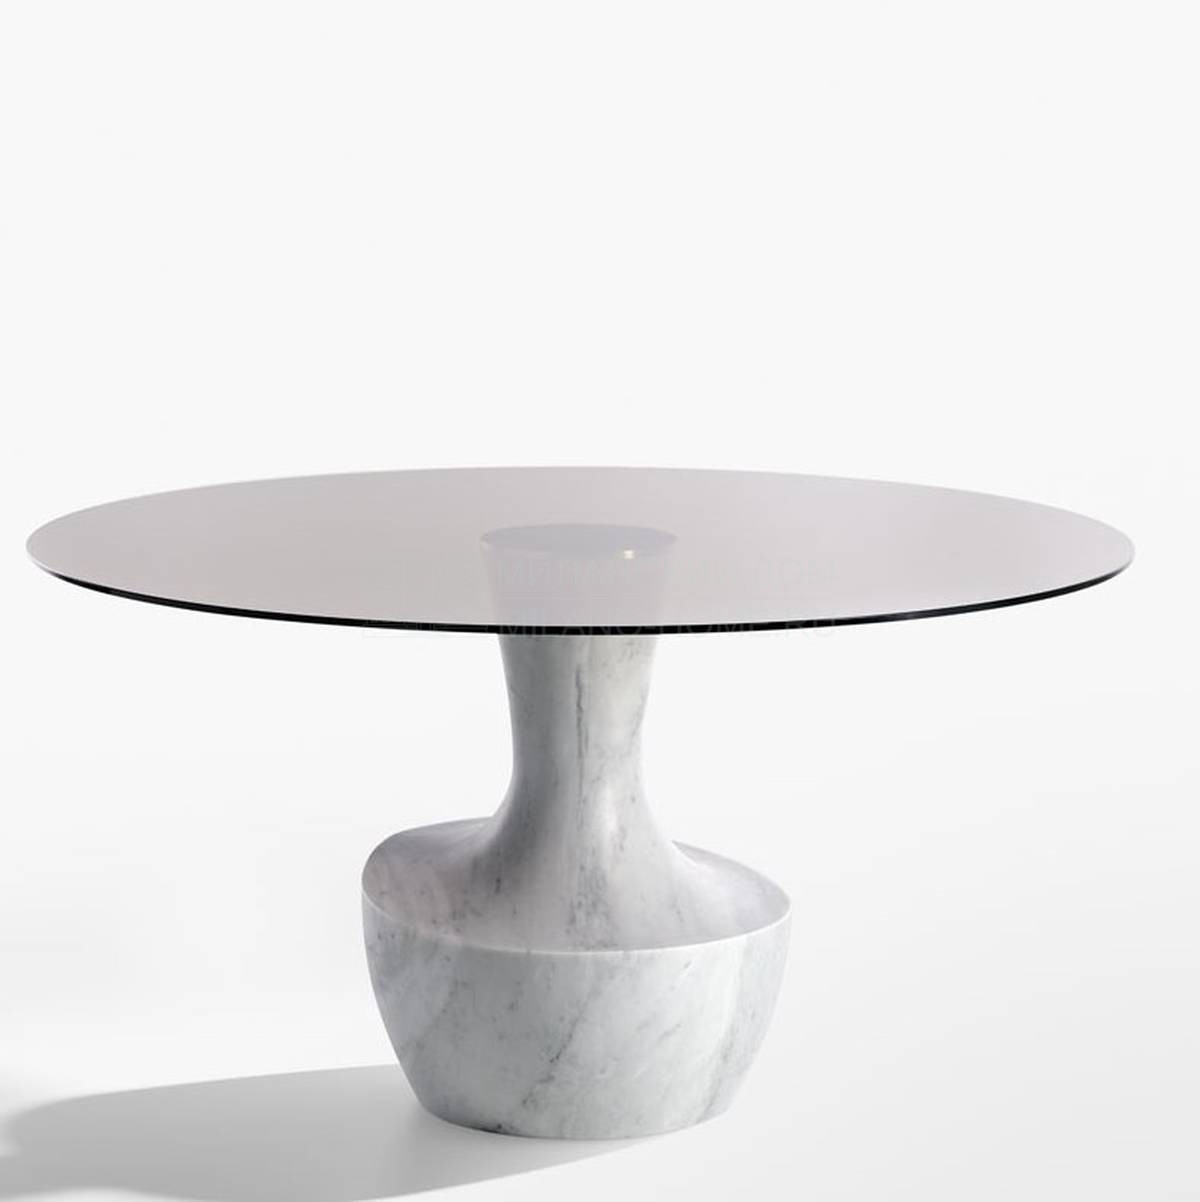 Круглый стол Anfora round table из Италии фабрики POTOCCO